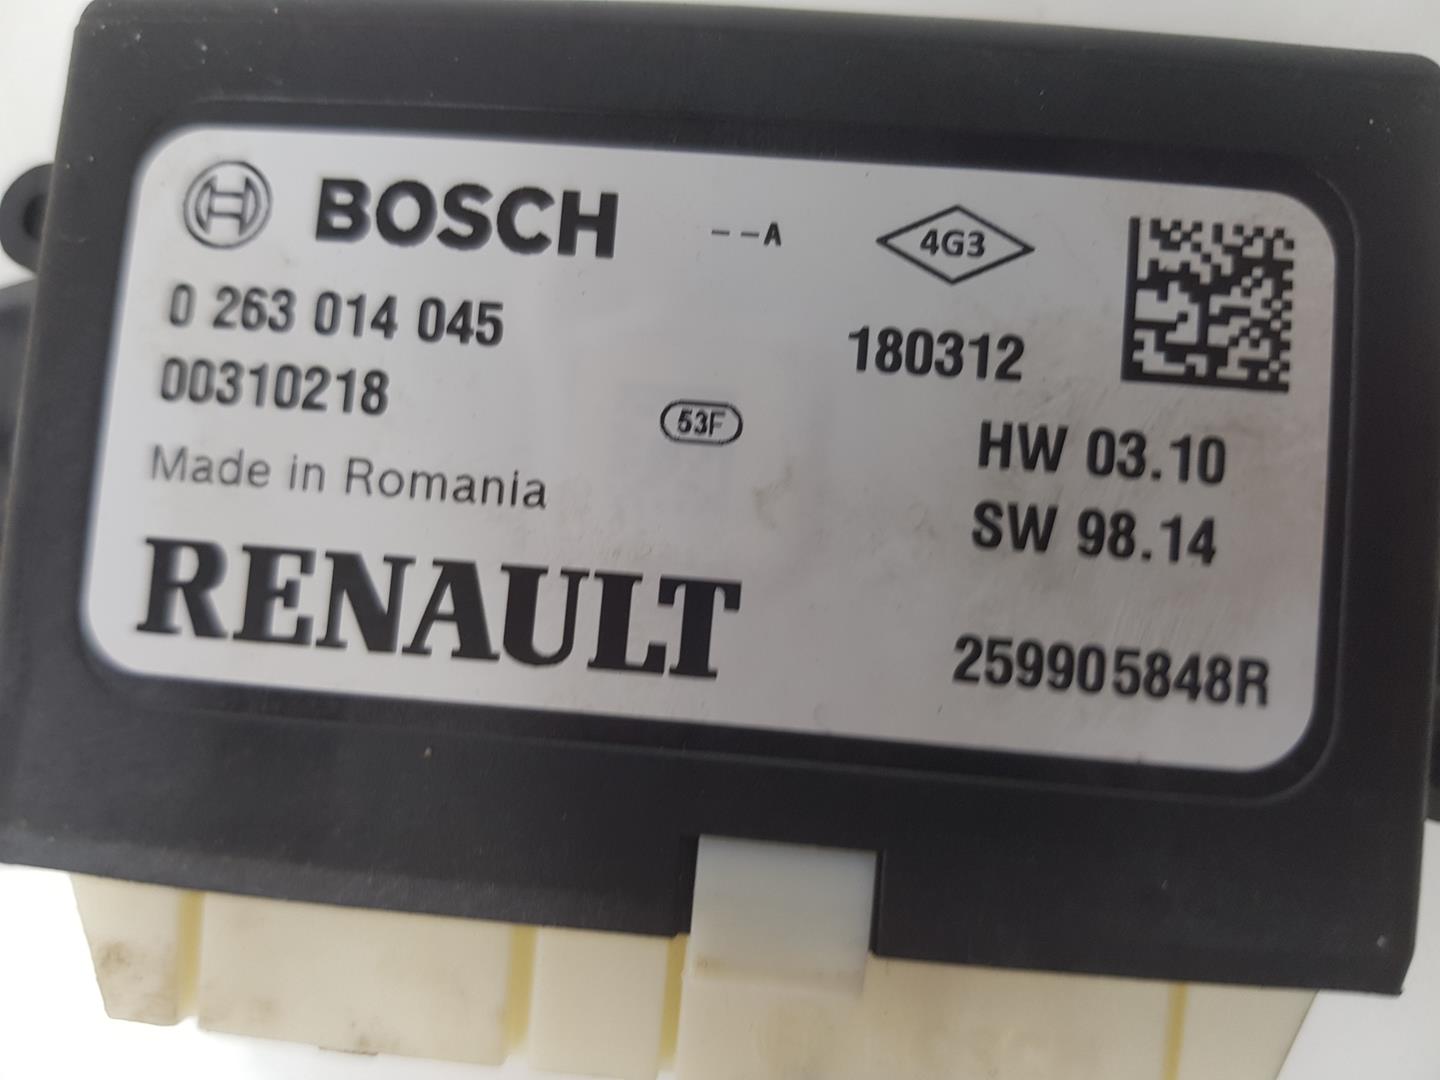 RENAULT Clio 4 generation (2012-2020) Autres unités de contrôle 259905848R, 259905848R 25112462